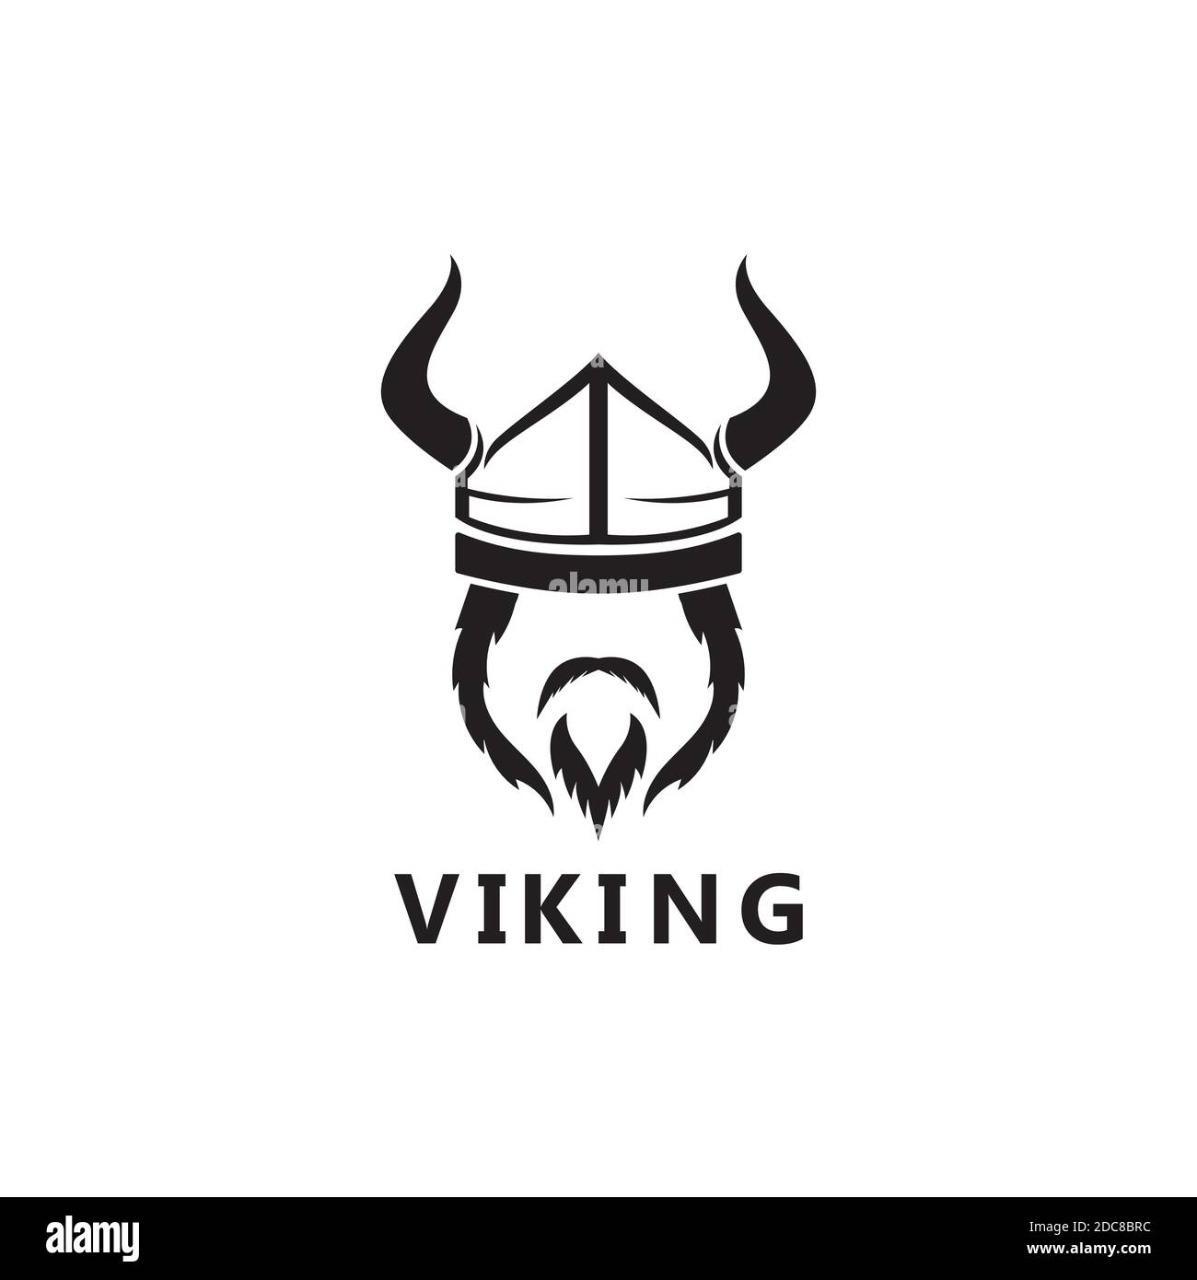 Vikingo95?s=h03qbut35wfkwa0+i6hjhvb1q4mstcll1fslkceb0fk=